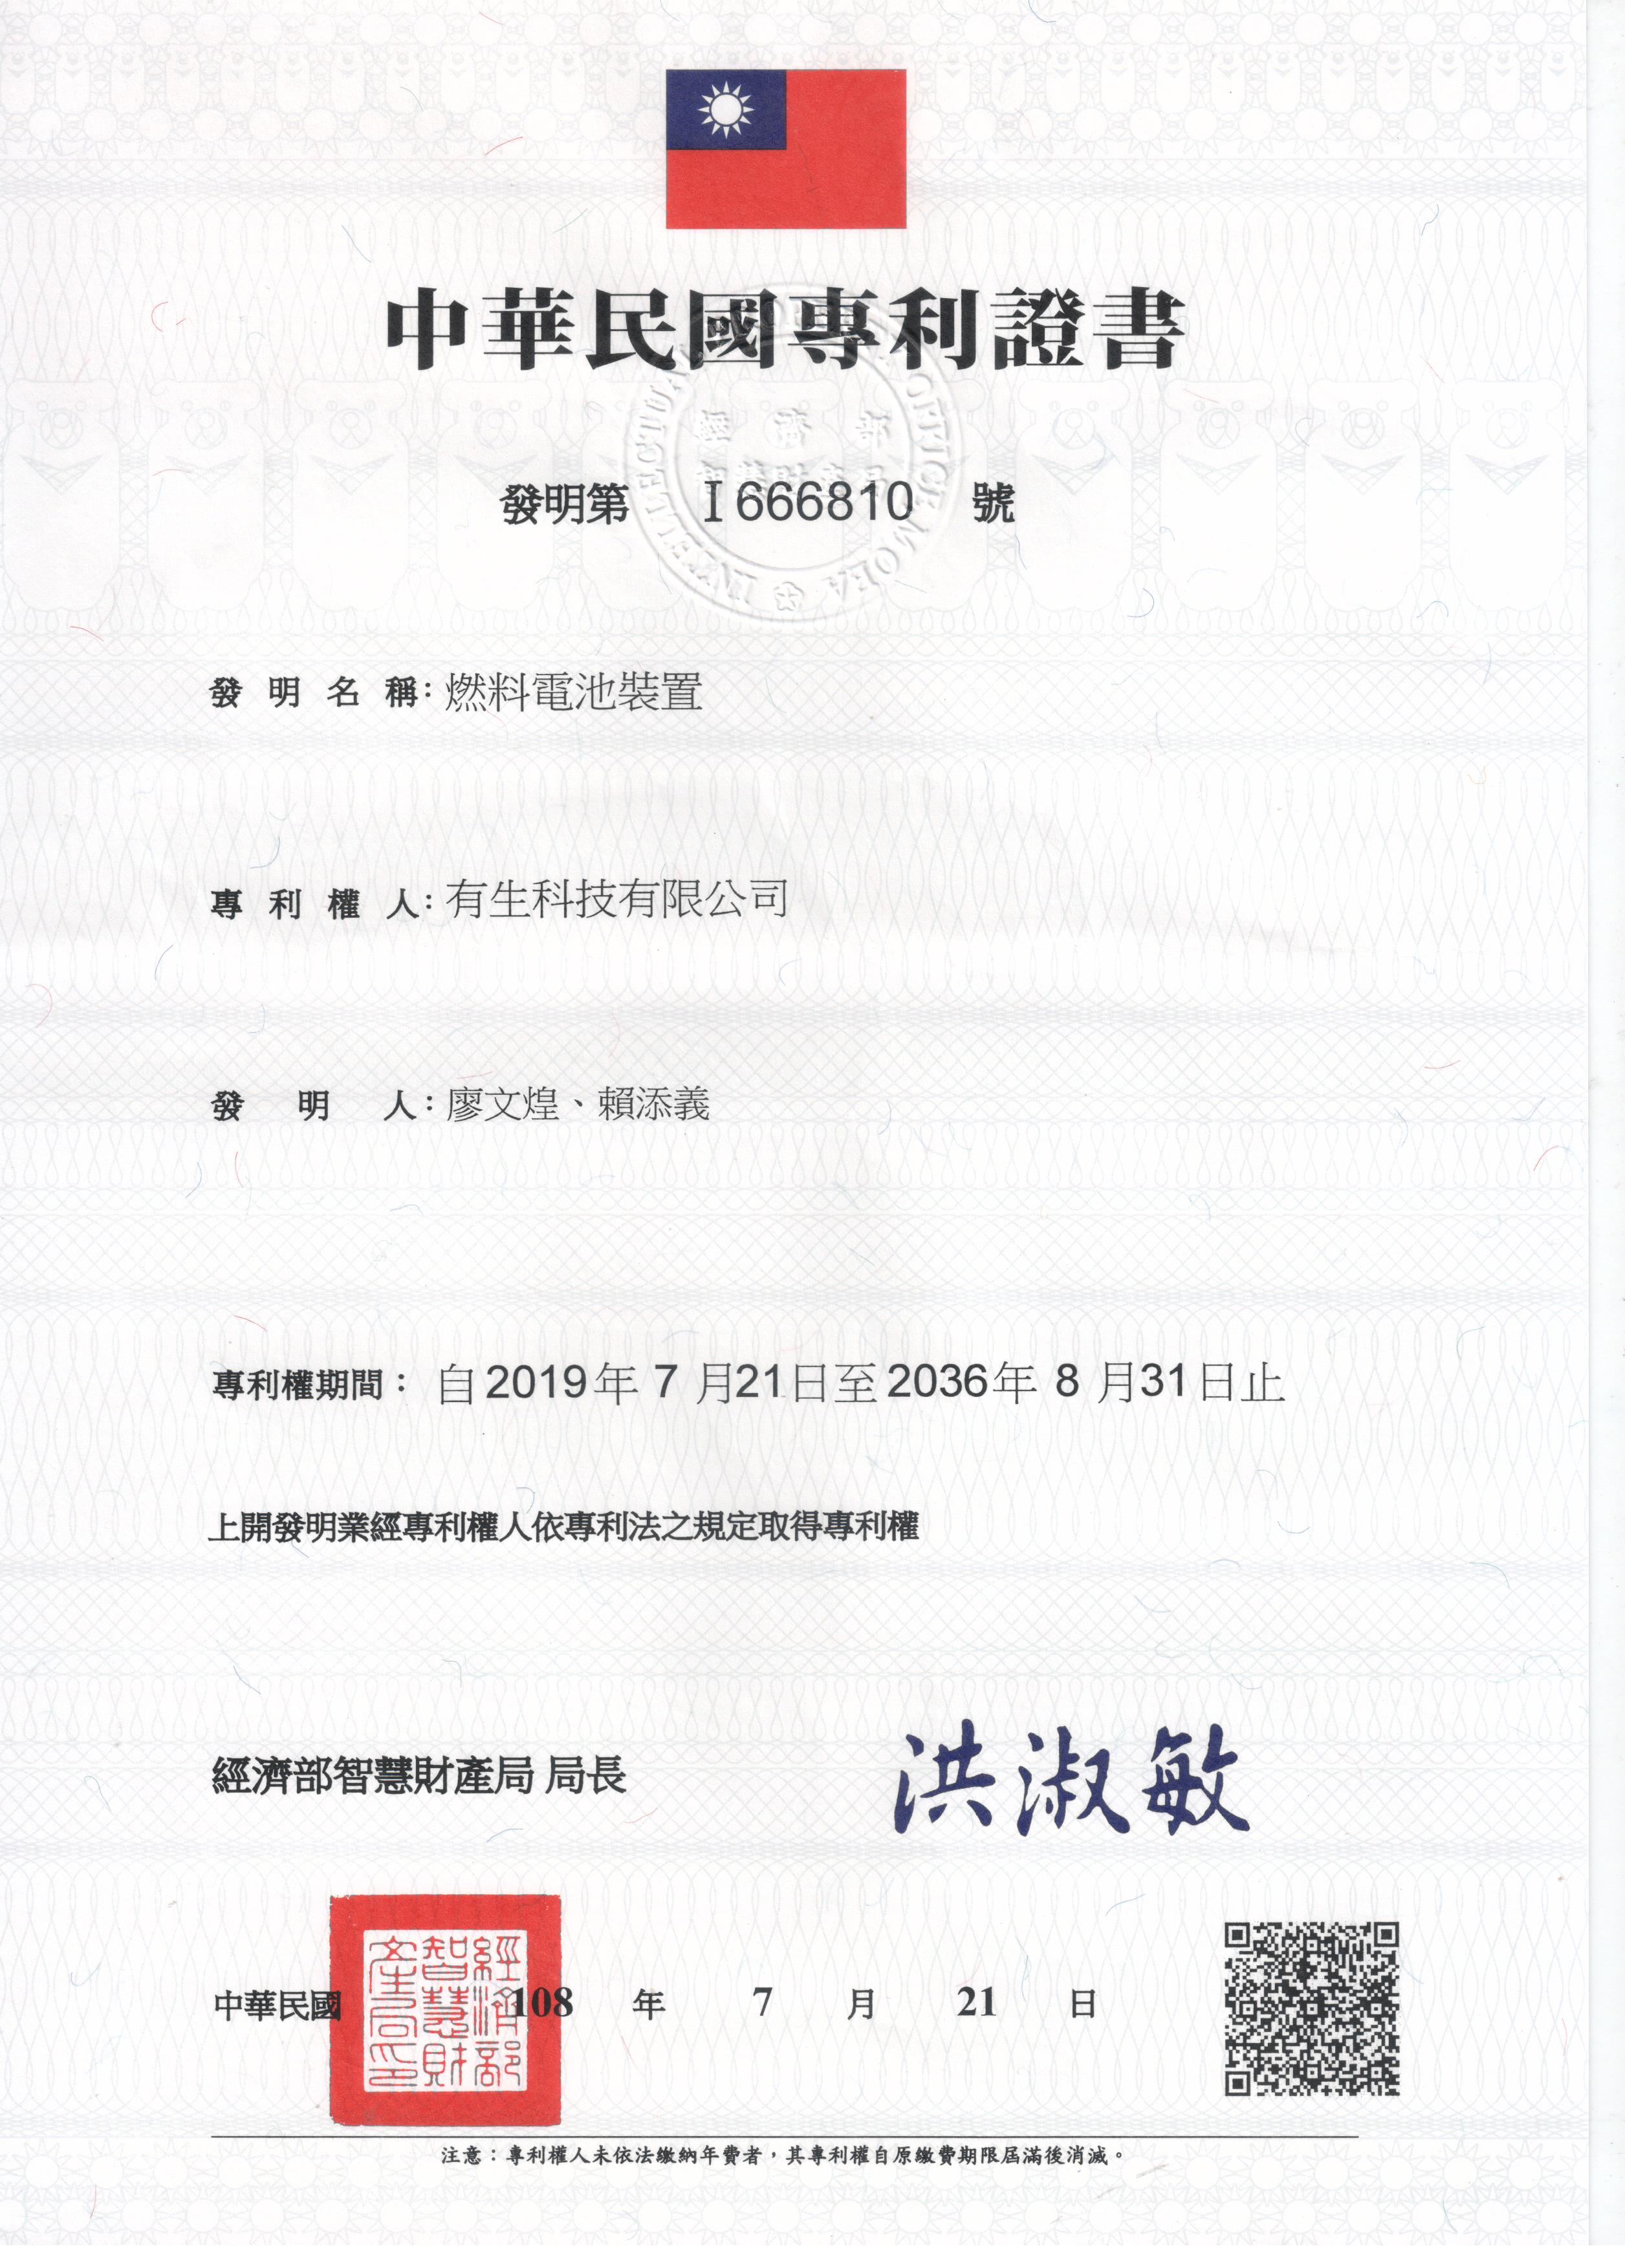 專利證書台灣I666810號燃料電池裝置